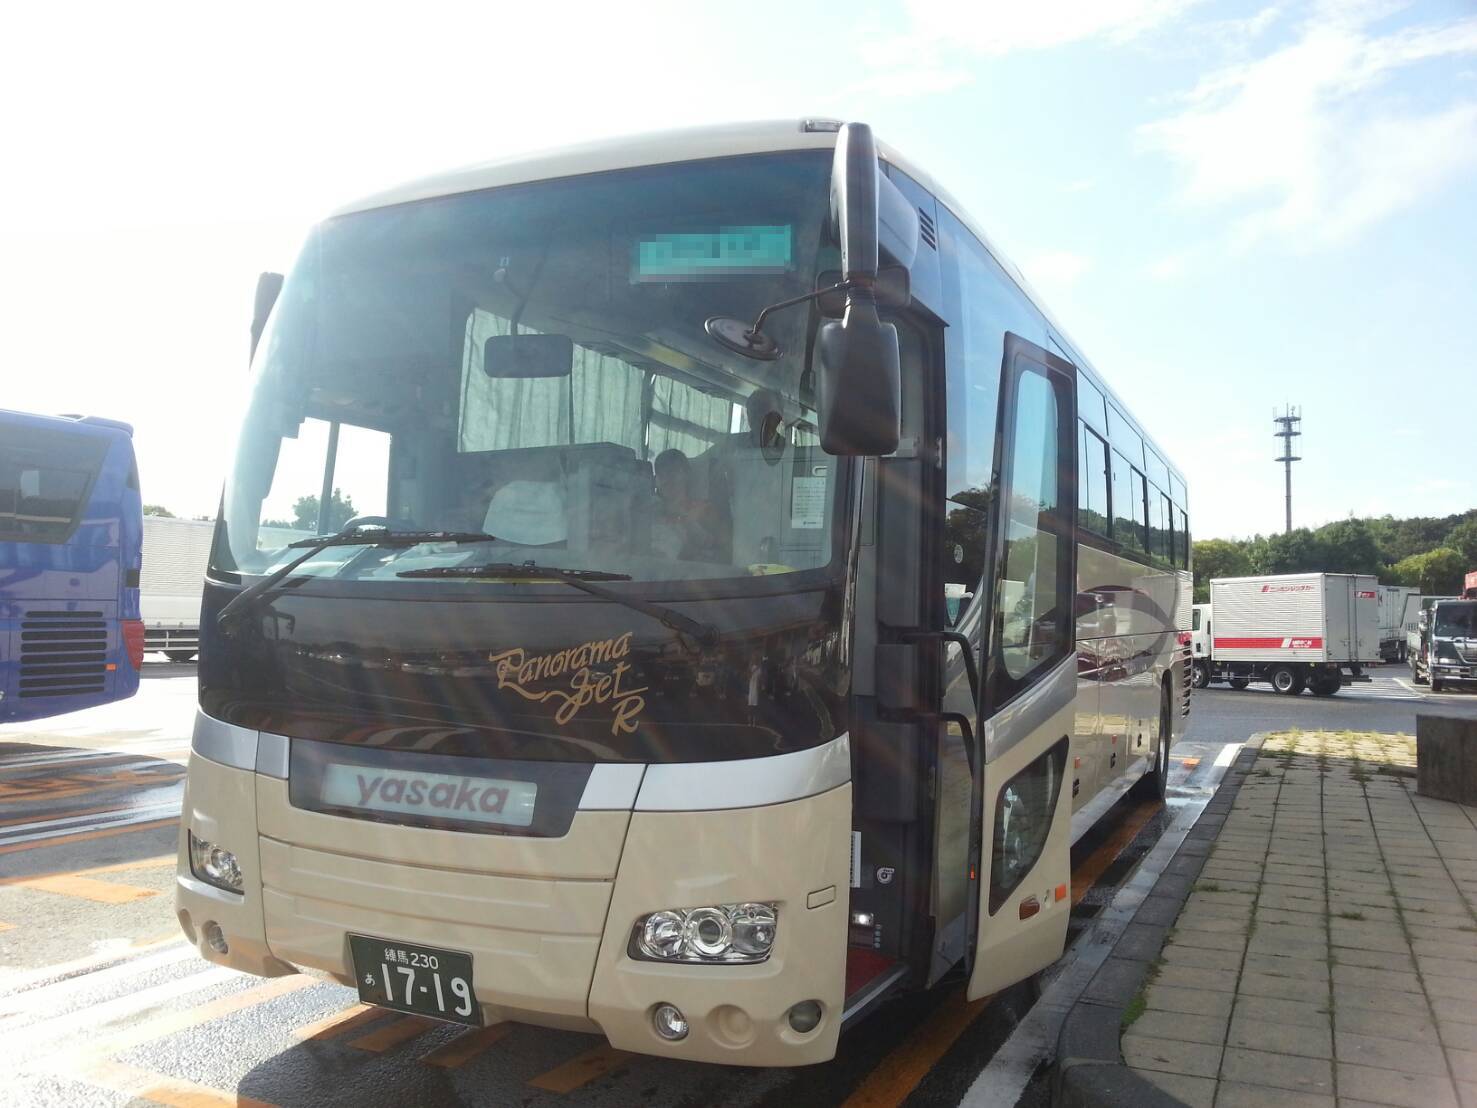 借りたのは東京ヤサカ観光バスさんの大型バス